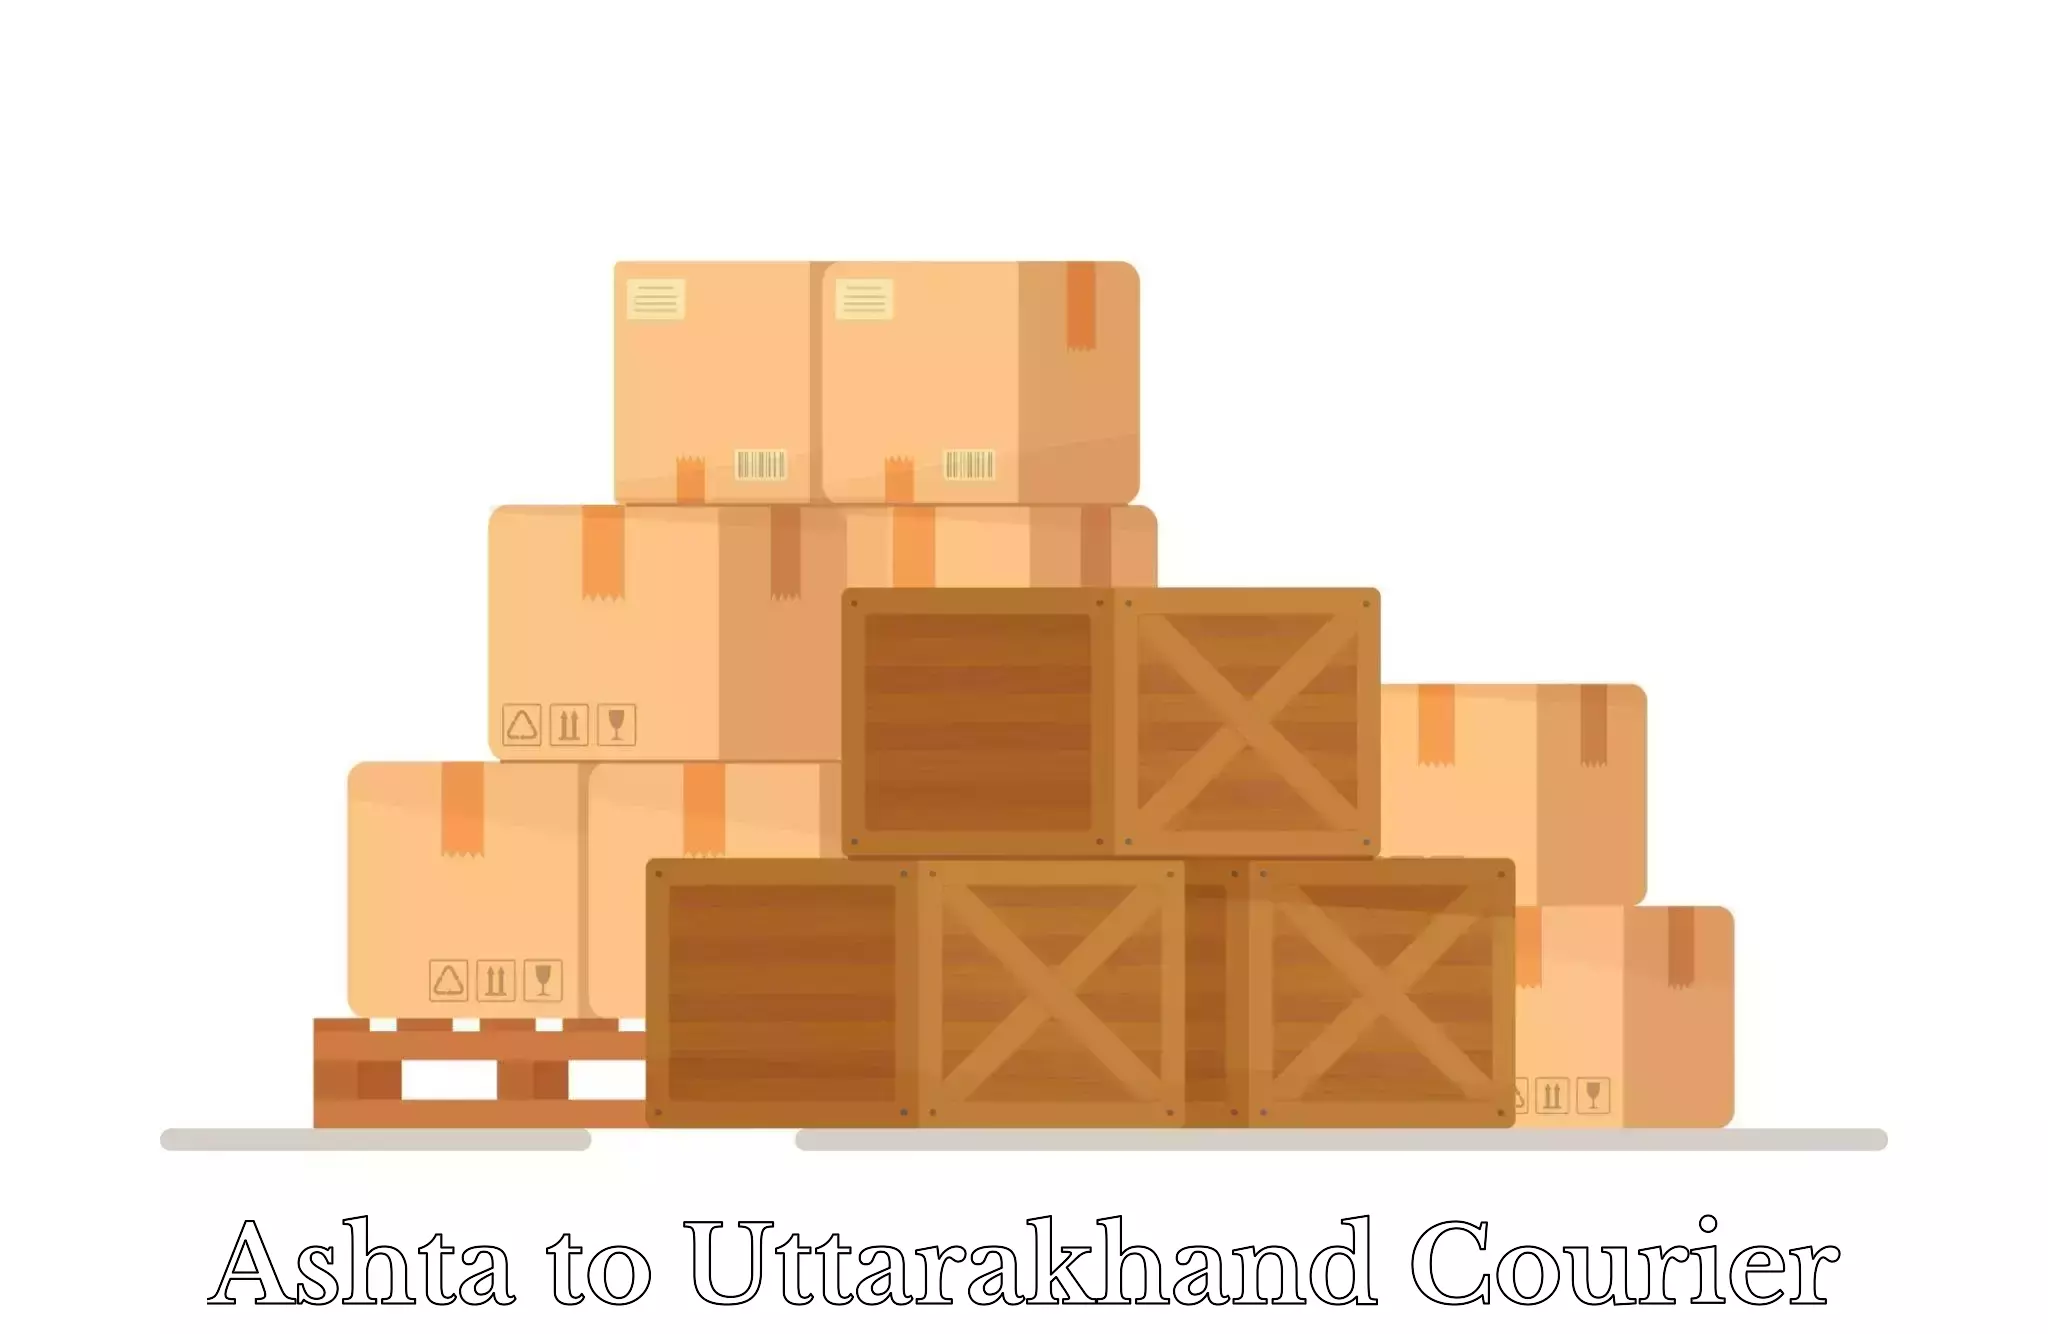 Luggage delivery logistics Ashta to Uttarakhand